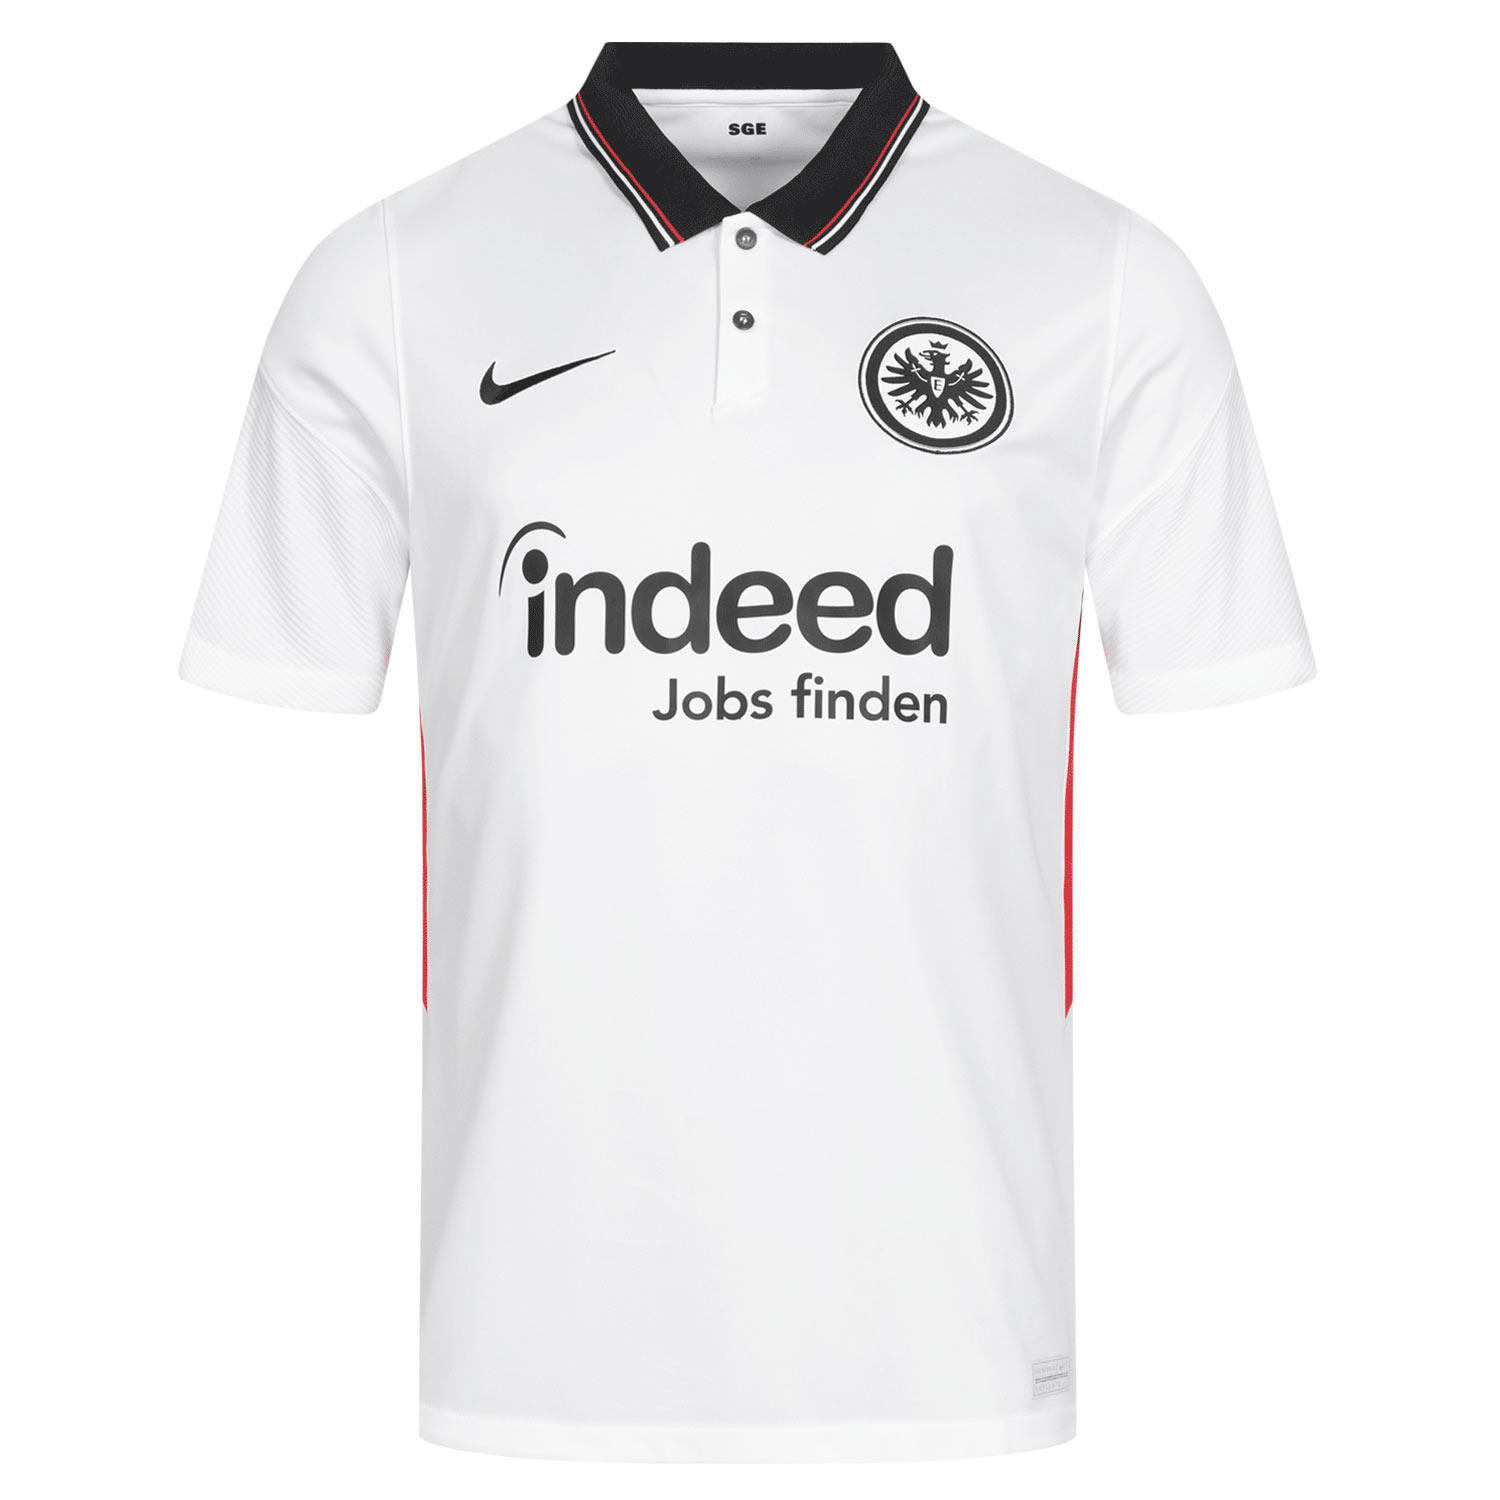 Maglie Eintracht Francoforte 2020-2021, l'omaggio al Romer della città